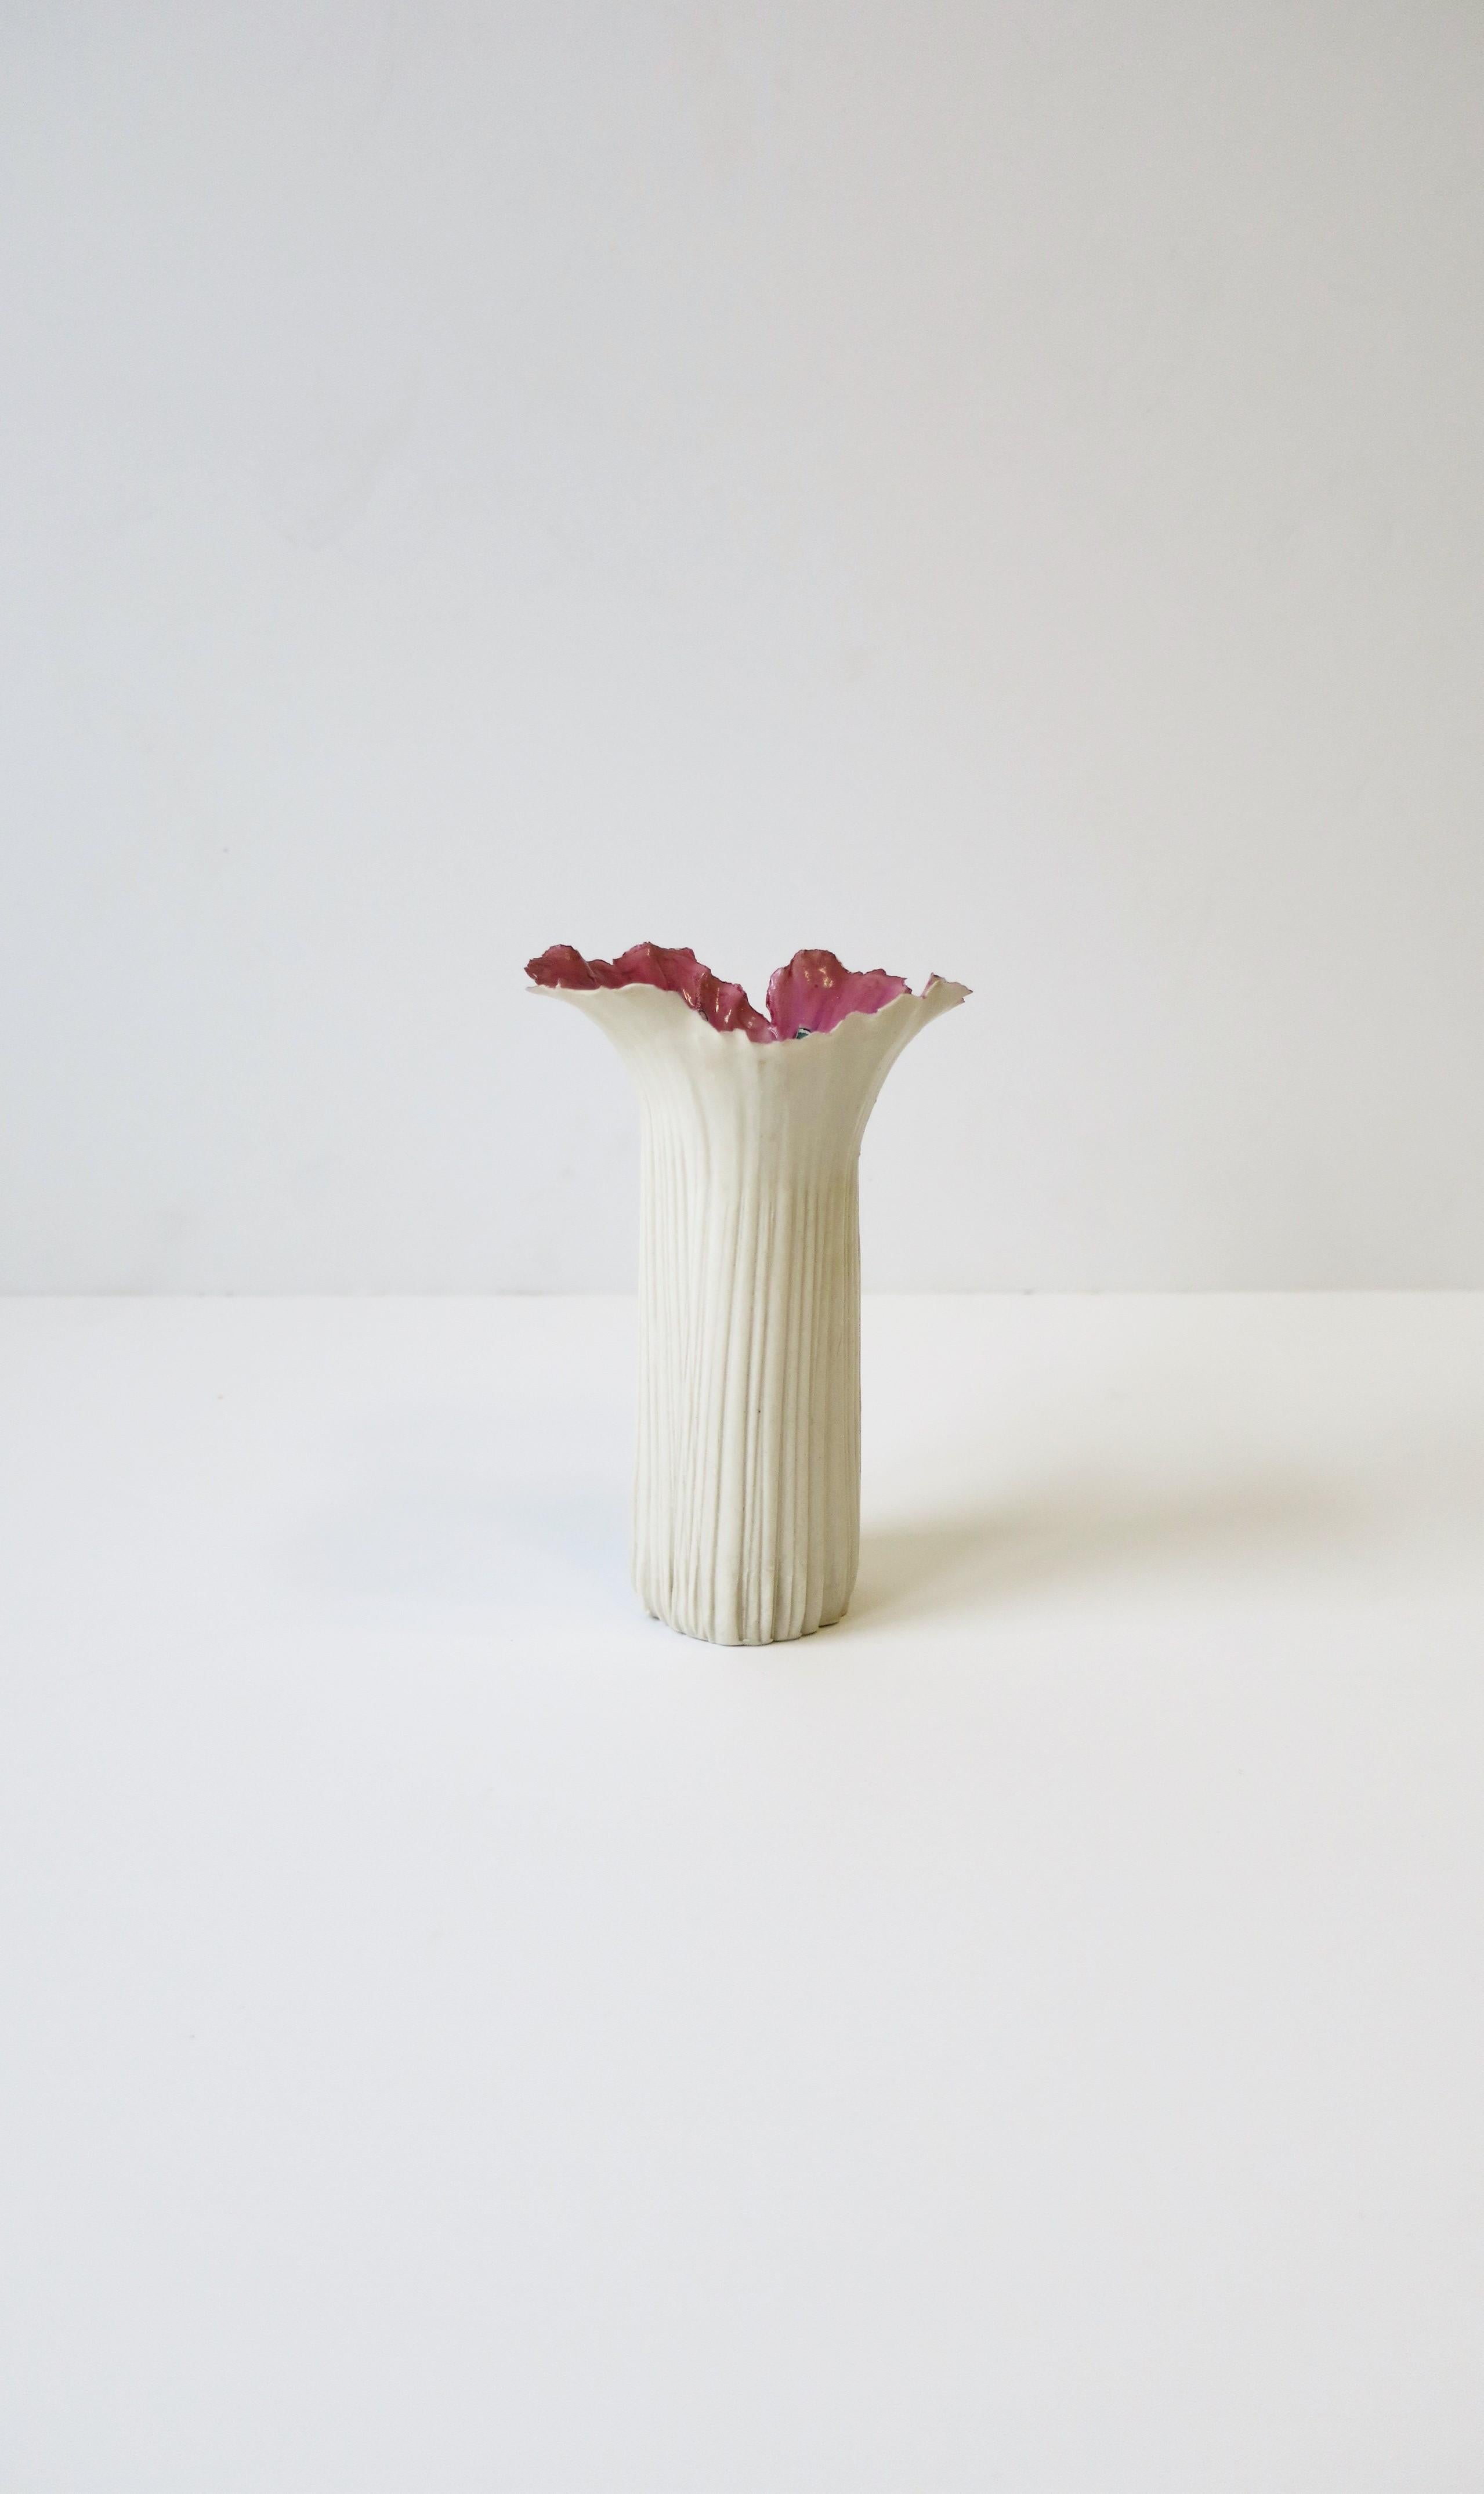 Eine schöne, signierte Vase aus weißem, rosa und grünem Studio-Porzellan im Jugendstil, um das 20. Ein wunderschönes weißes, strukturiertes Äußeres mit detaillierten Lippen/Rändern und ein Inneres in leuchtenden Grün- und Rosatönen. Schön mit oder